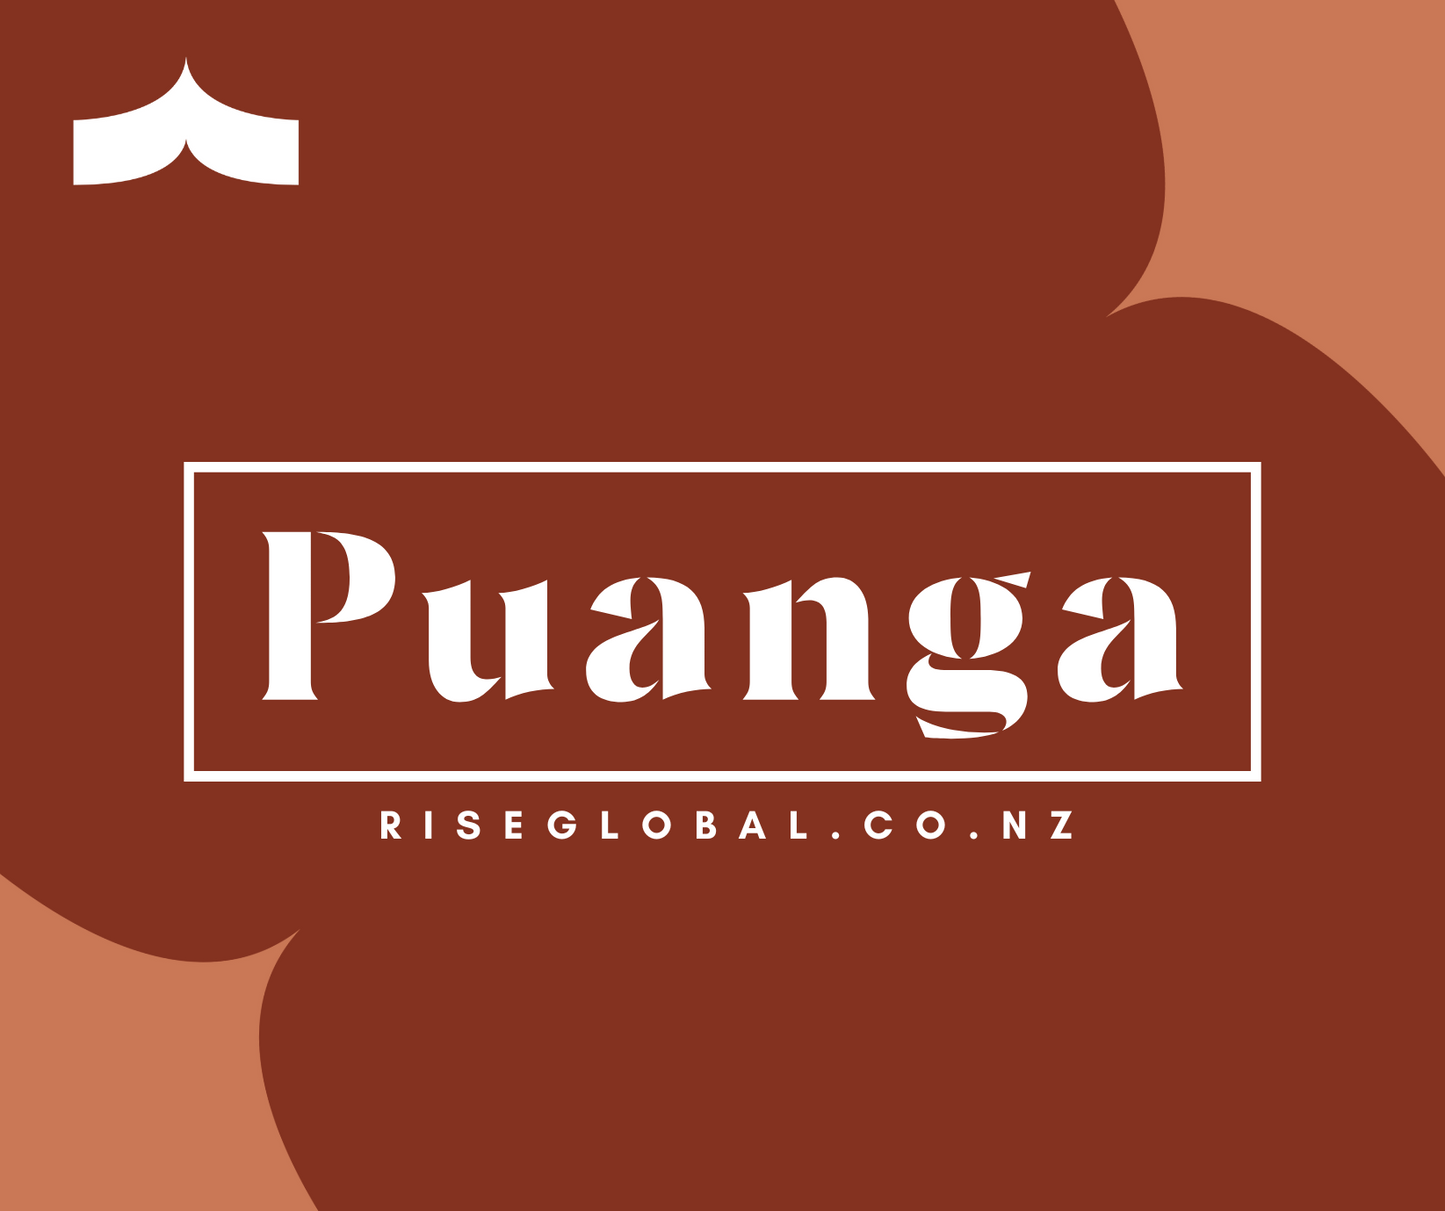 Puanga - retreat, reflect, and rise!